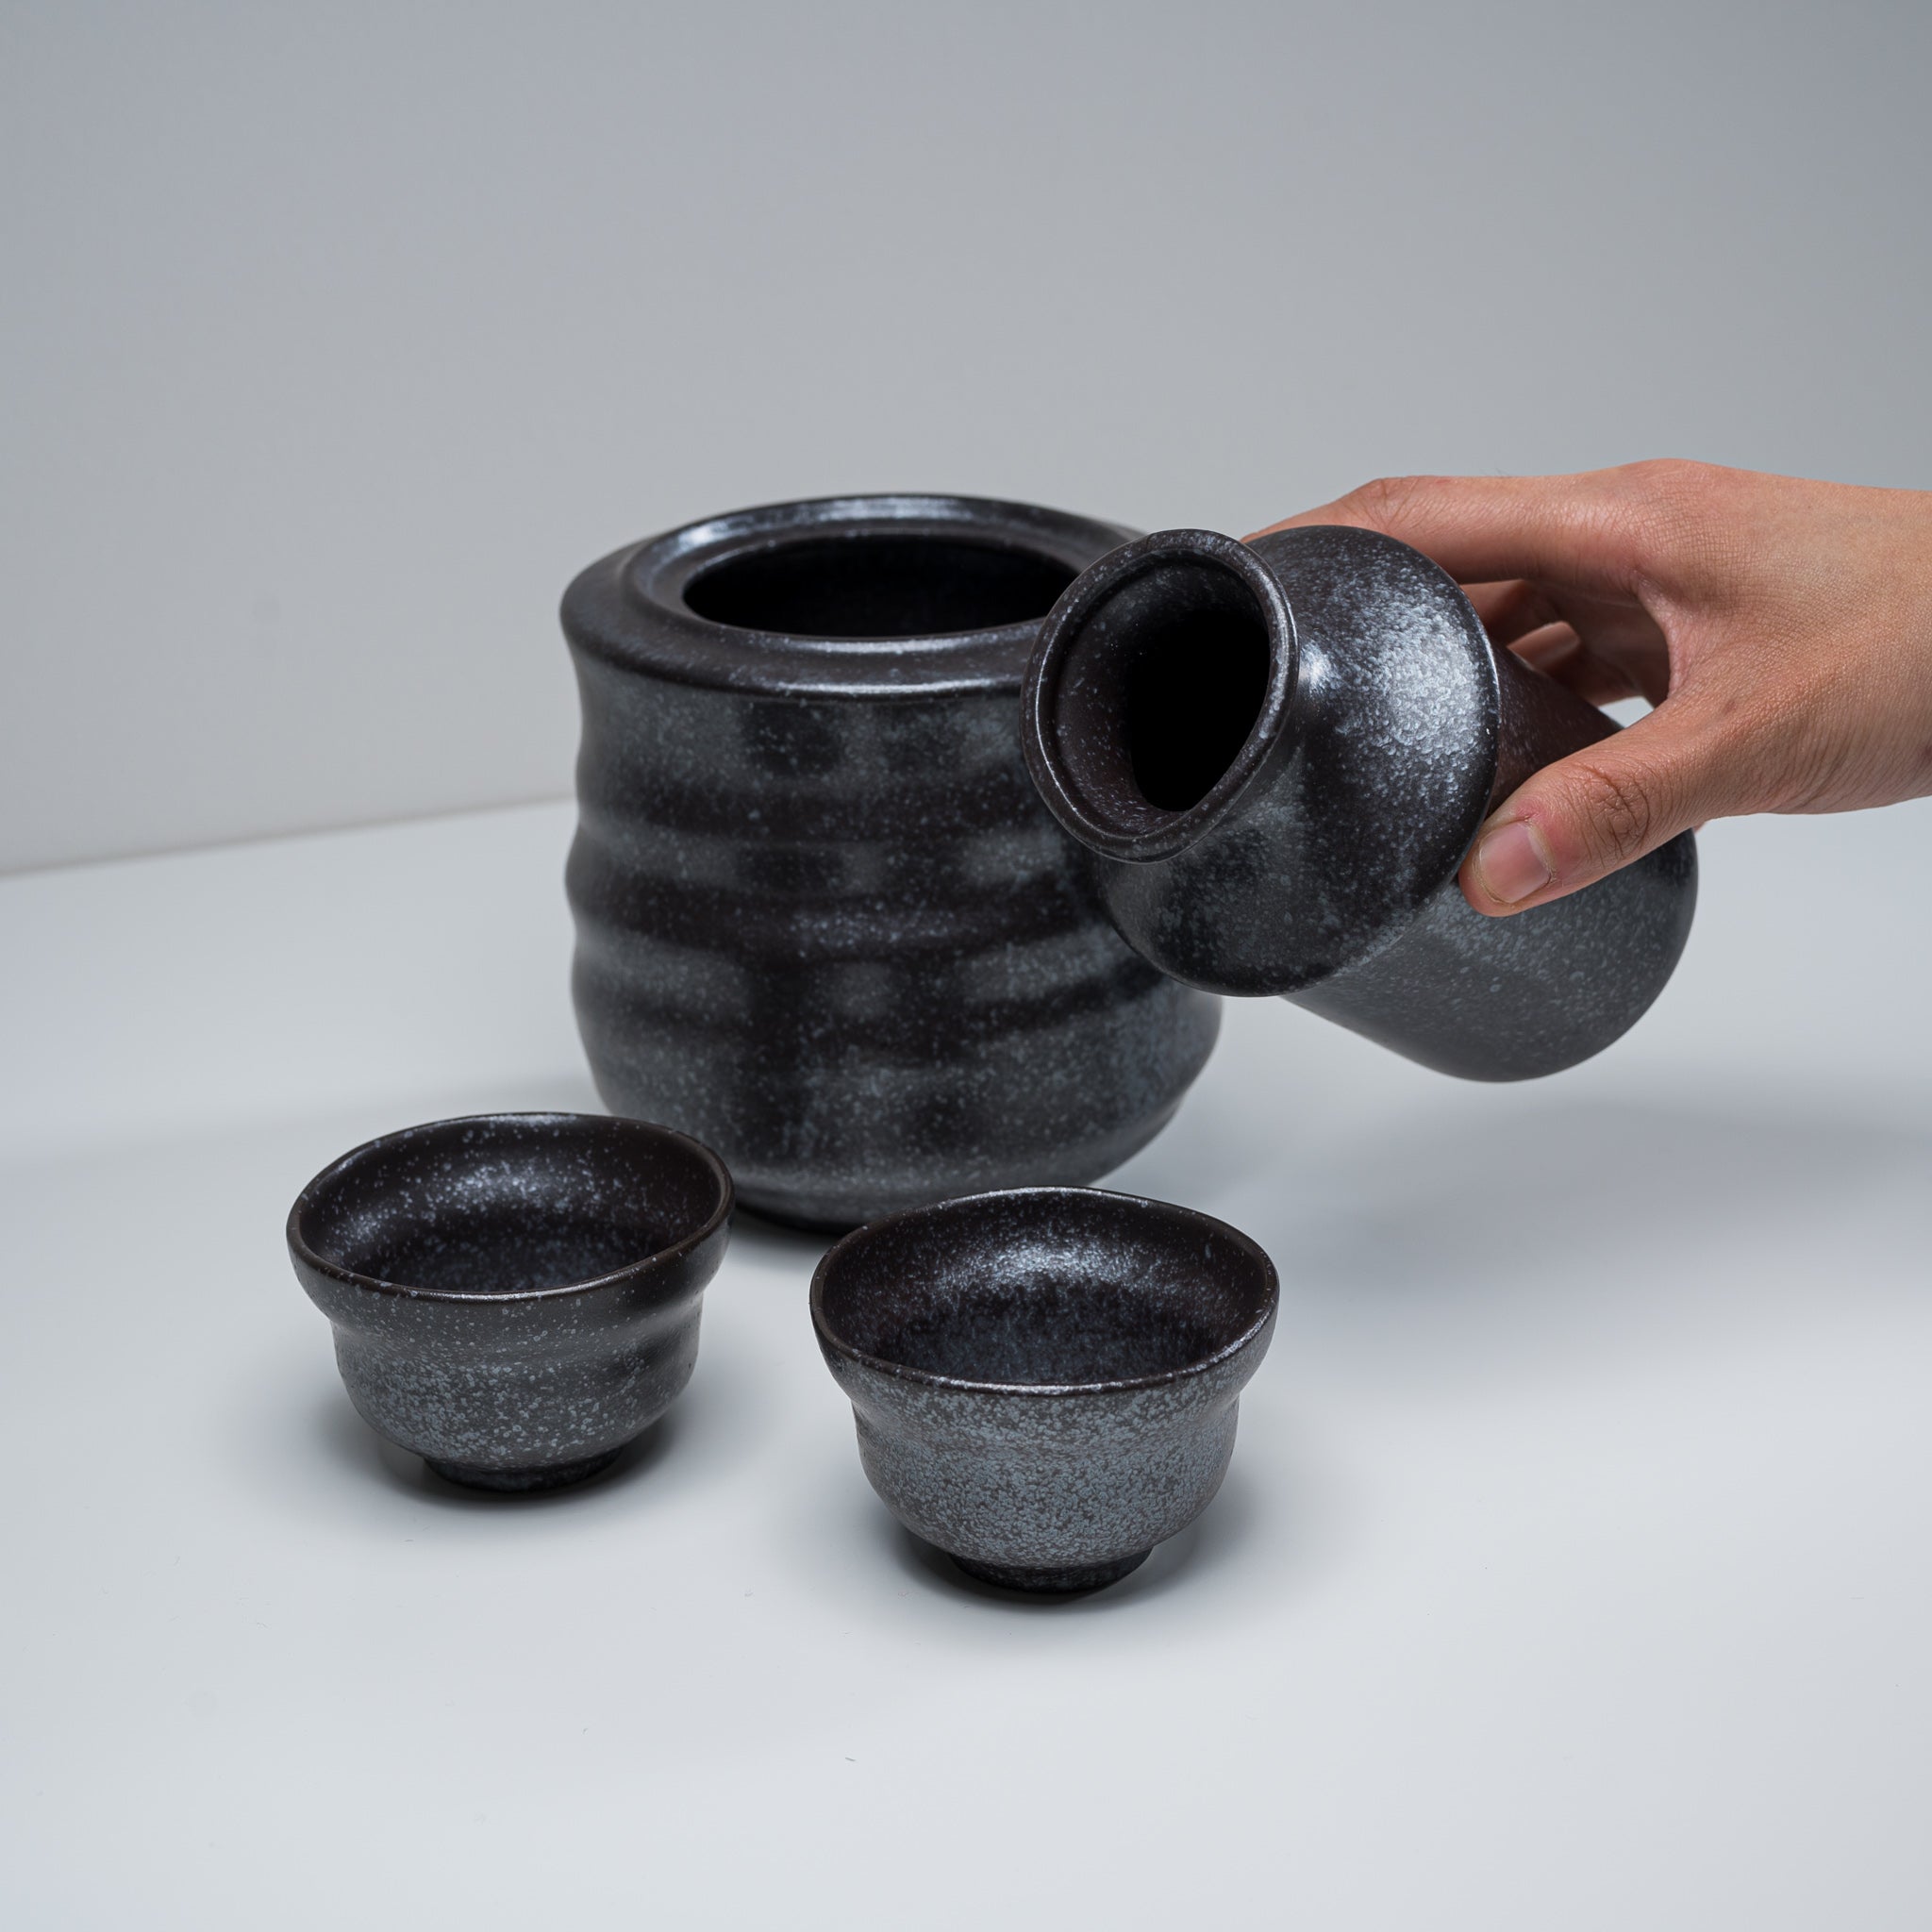 Mino ware Hot Sake Set - Charcoal Black / 熱燗用 酒器セット